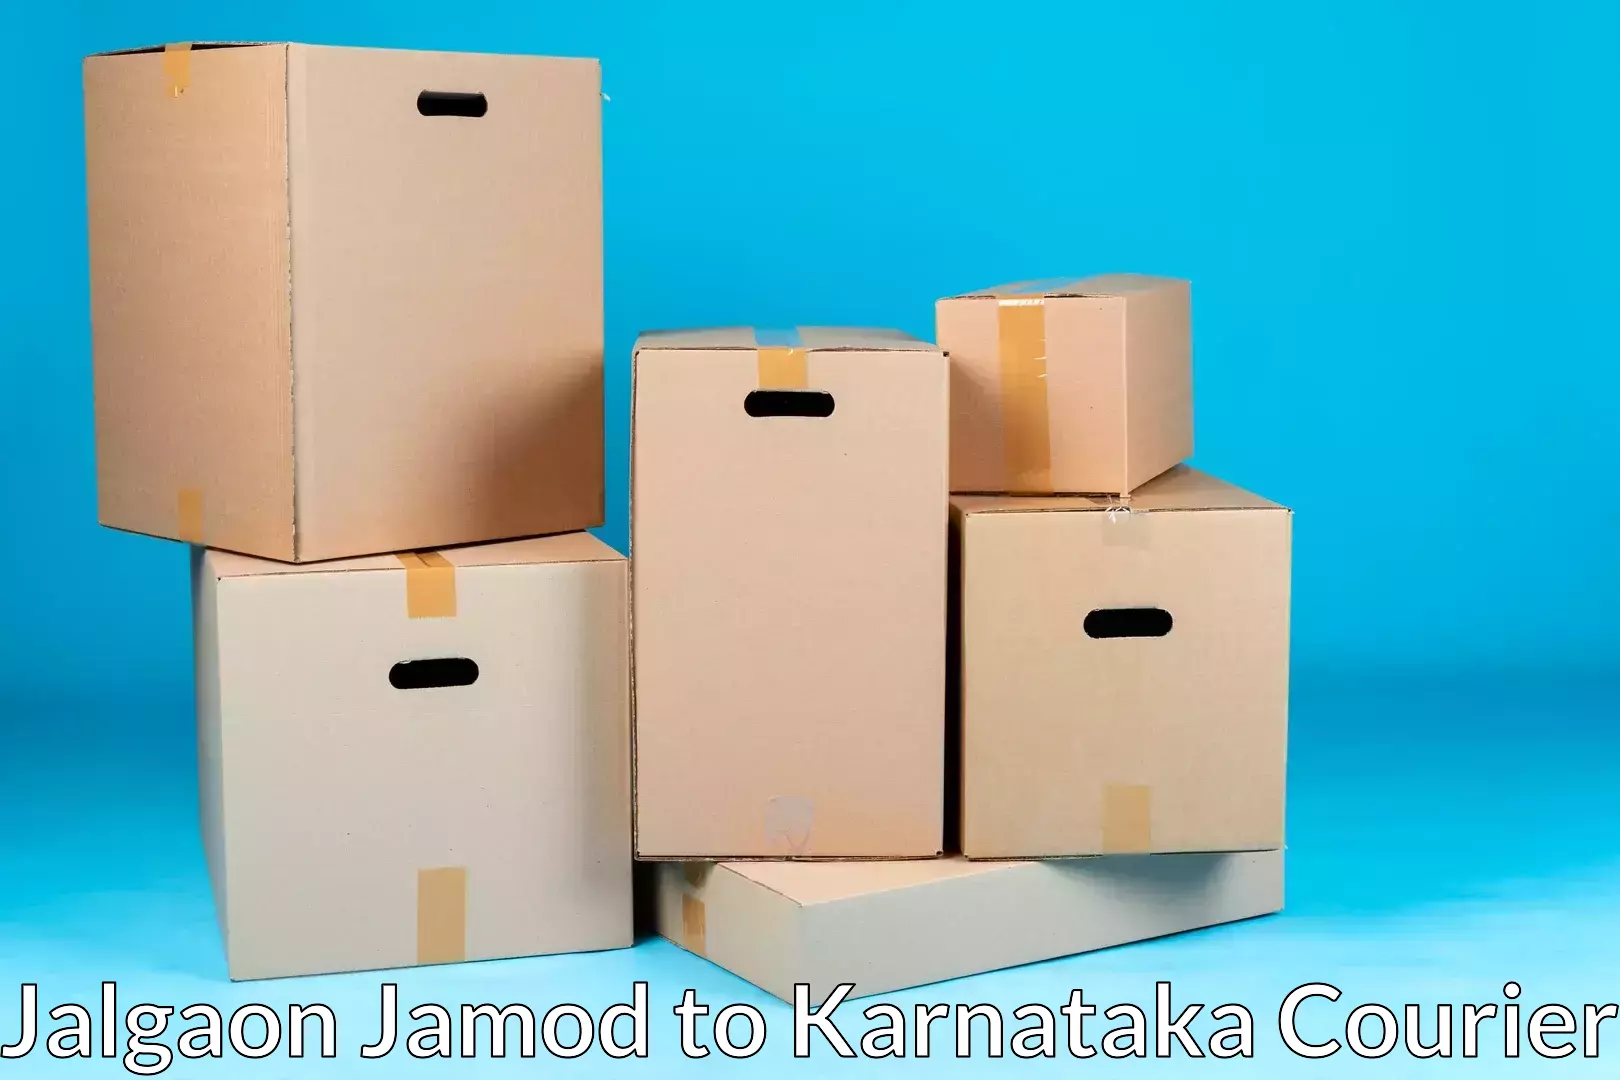 Trusted moving company Jalgaon Jamod to Athani